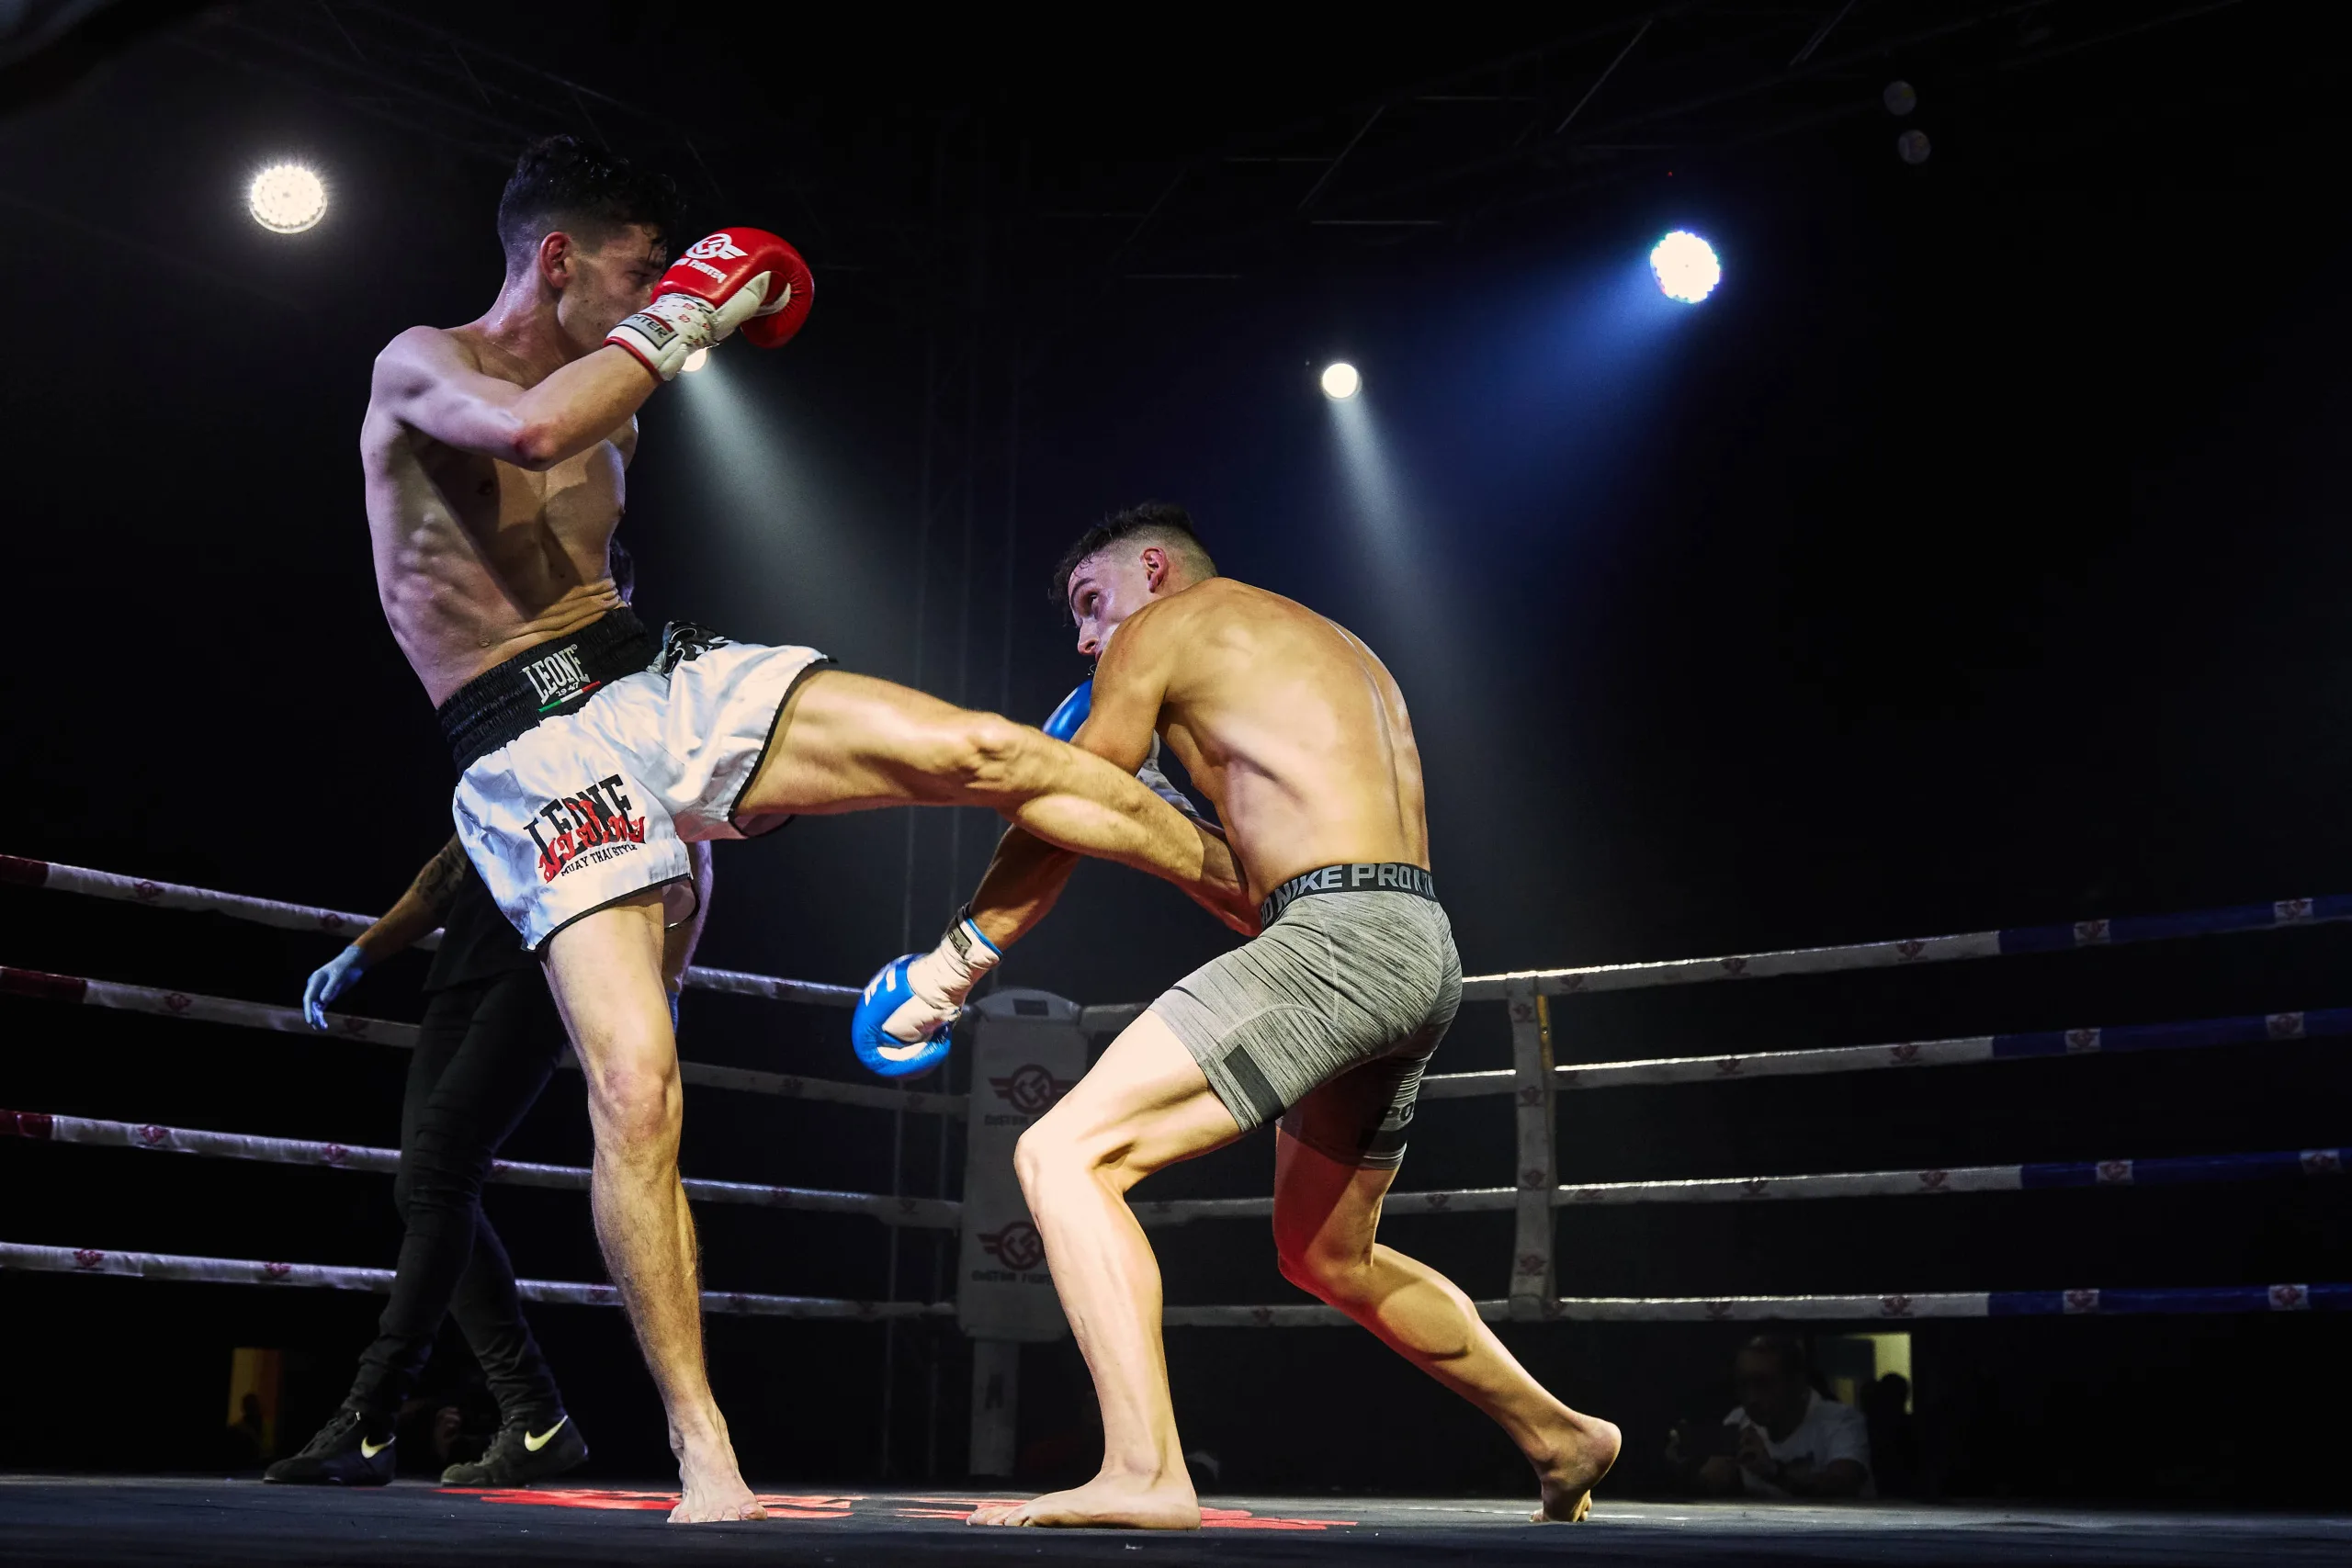 Técnicas potentes y efectivas para dominar el combate en Muay Thai